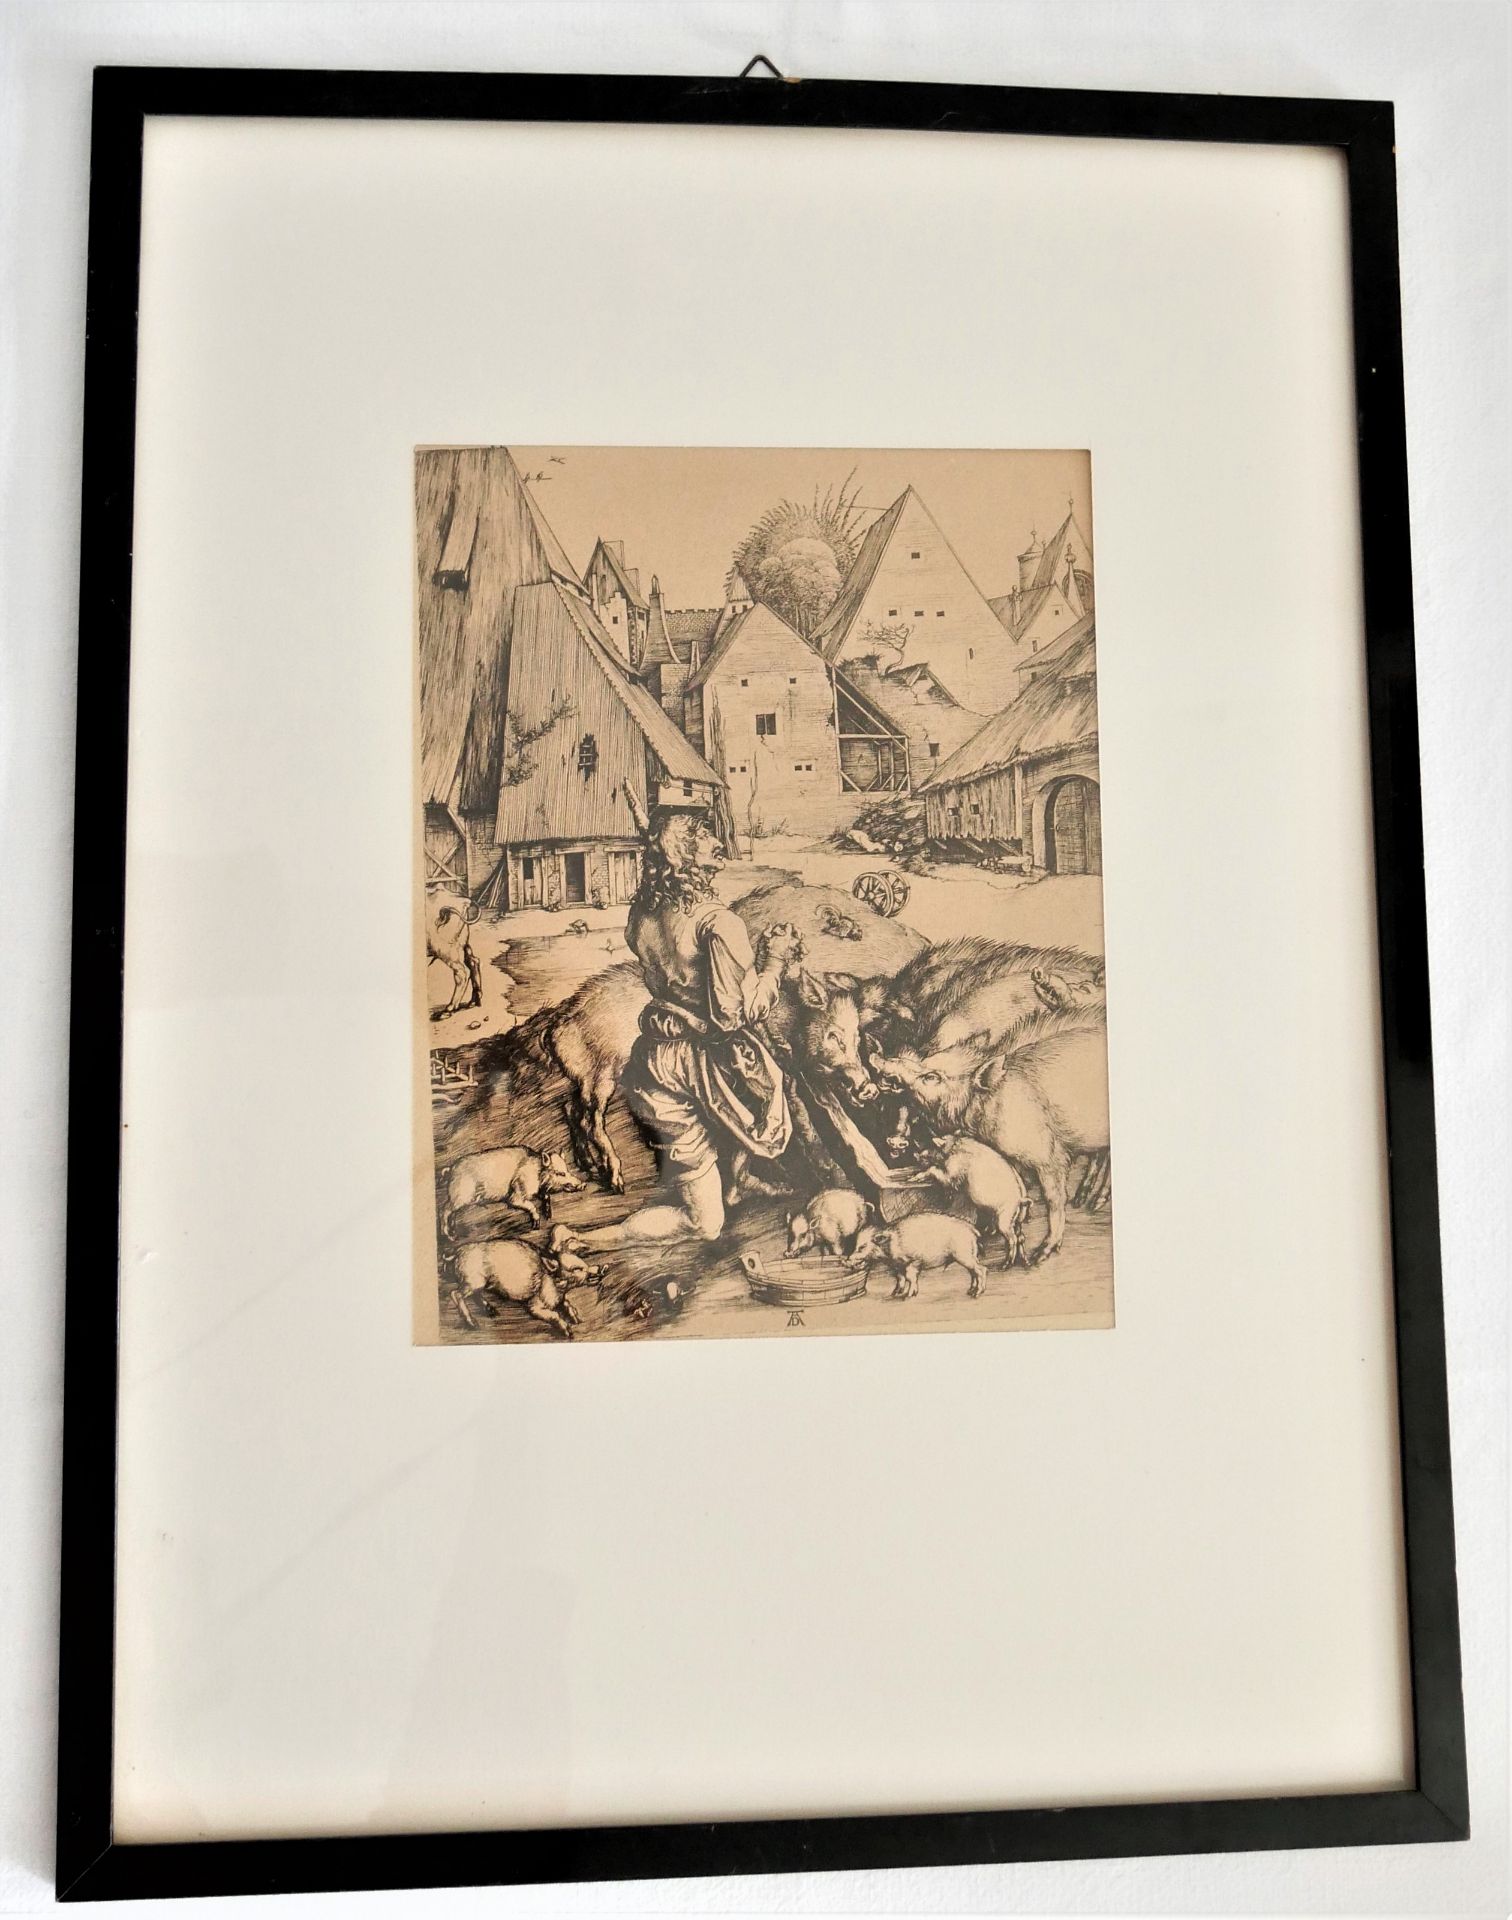 Albrecht Dürer Stich "Der verlorene Sohn", um 1900 gedruckt. Hinter Glas gerahmt, auf Karton